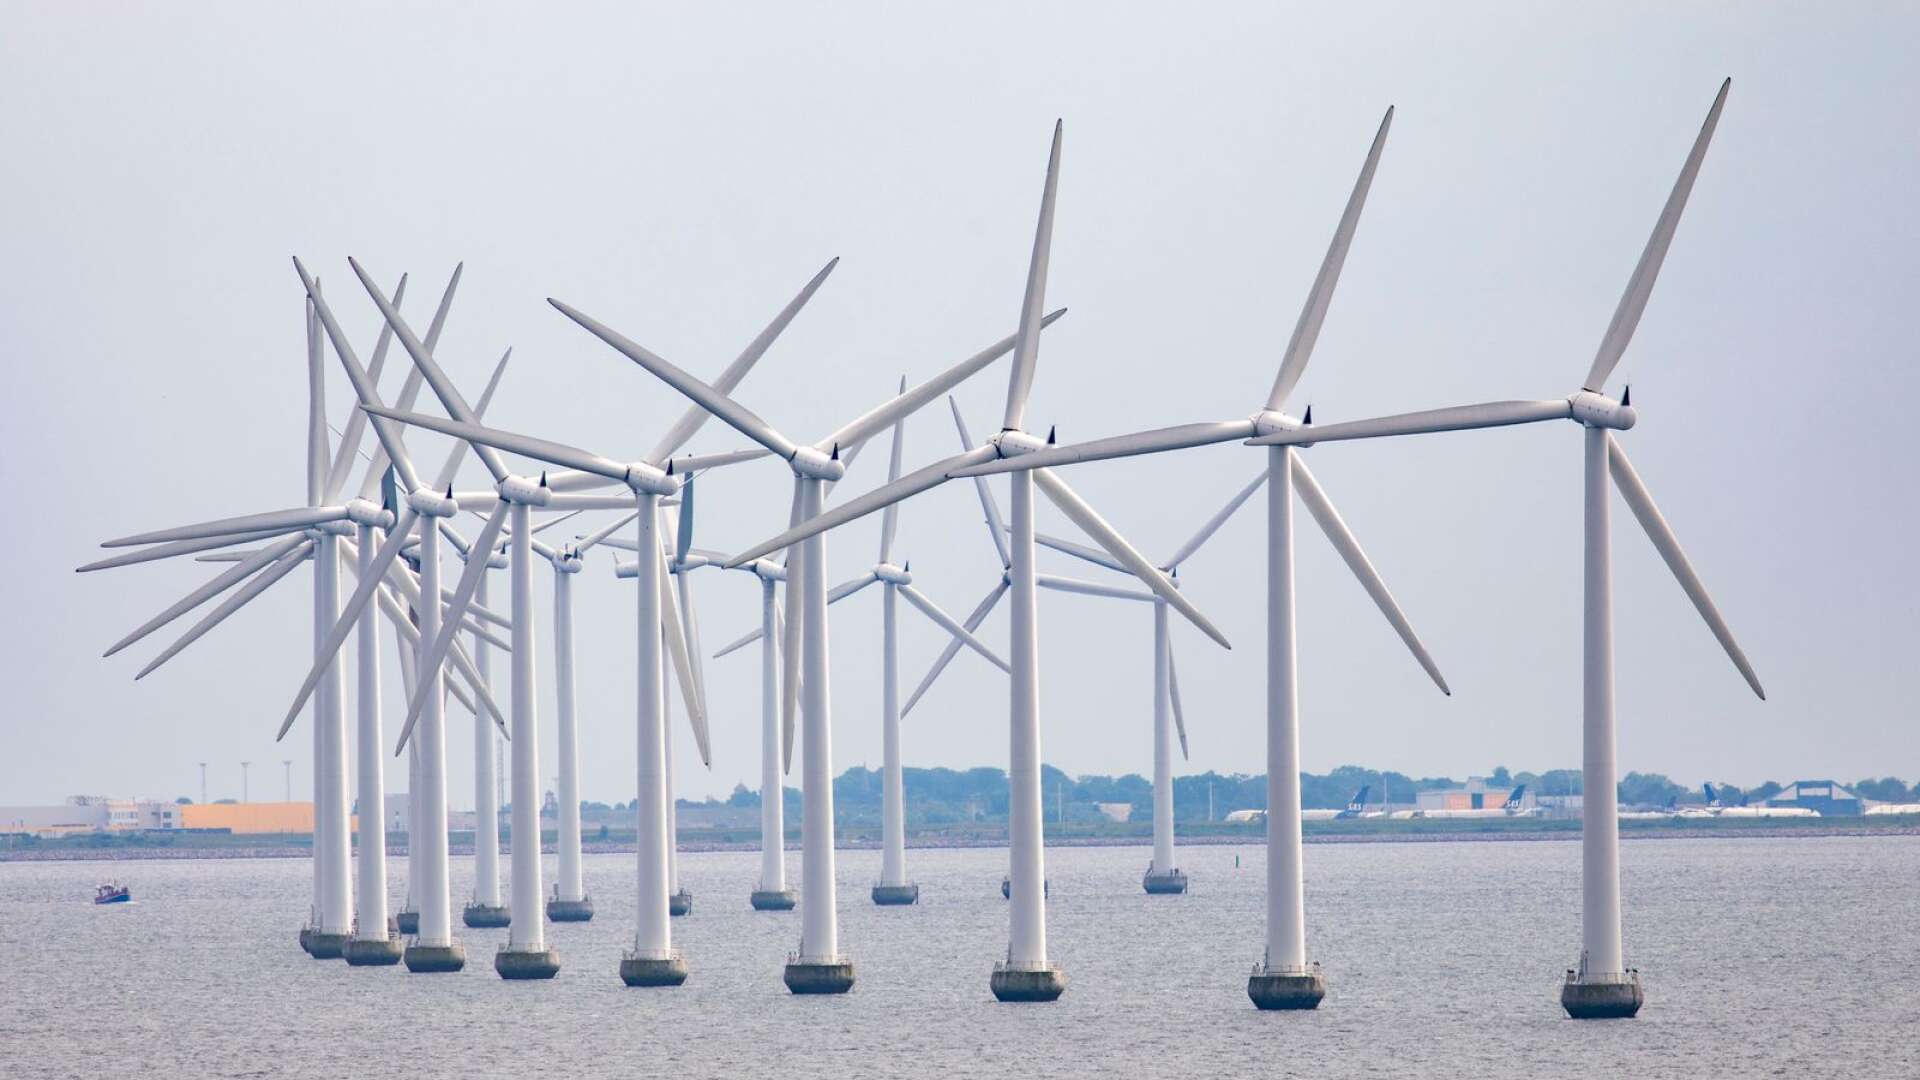 Där kommer havsbaserad vindkraft vara en mycket viktig komponent – inte minst för att kunna öka produktionen i ett medellångt tidsperspektiv, skriver Anders Wiktorson och Anna Berggren.